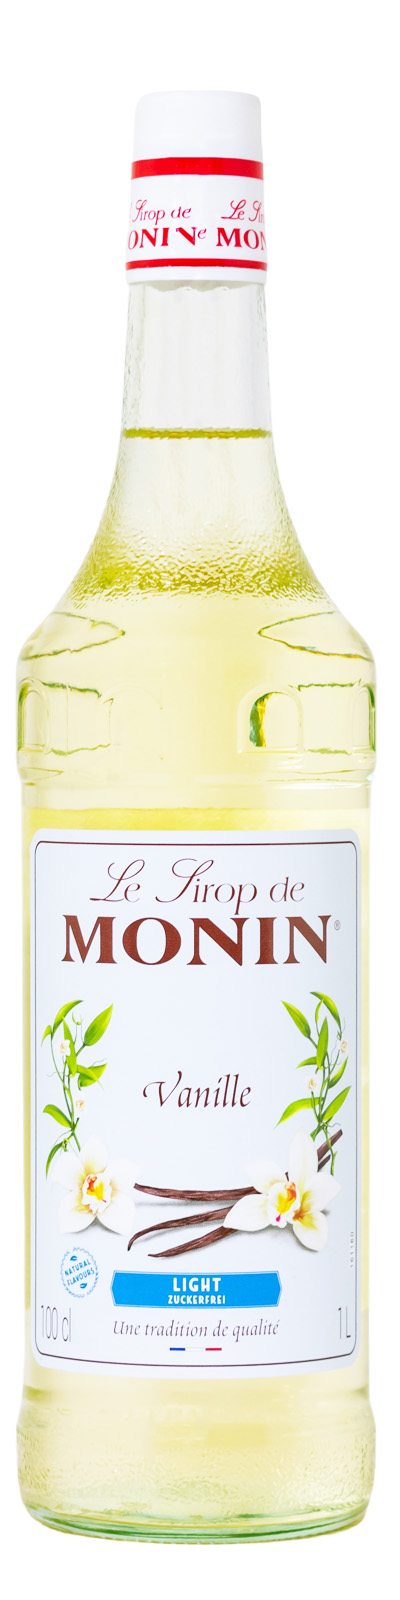 Monin Light Vanille Sirup - 1 Liter